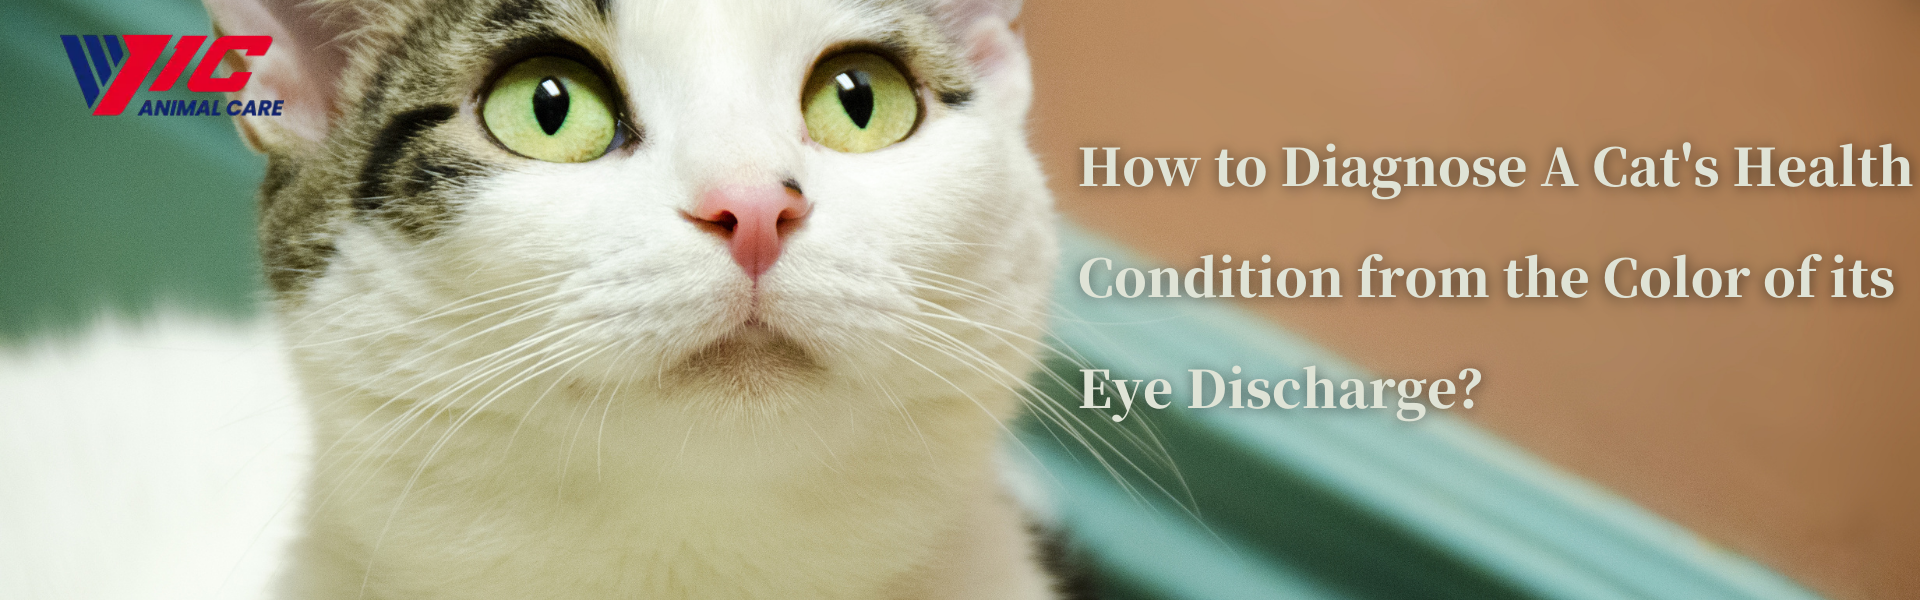 눈 분비물 색깔로 고양이의 건강 상태를 진단하는 방법은 무엇입니까?